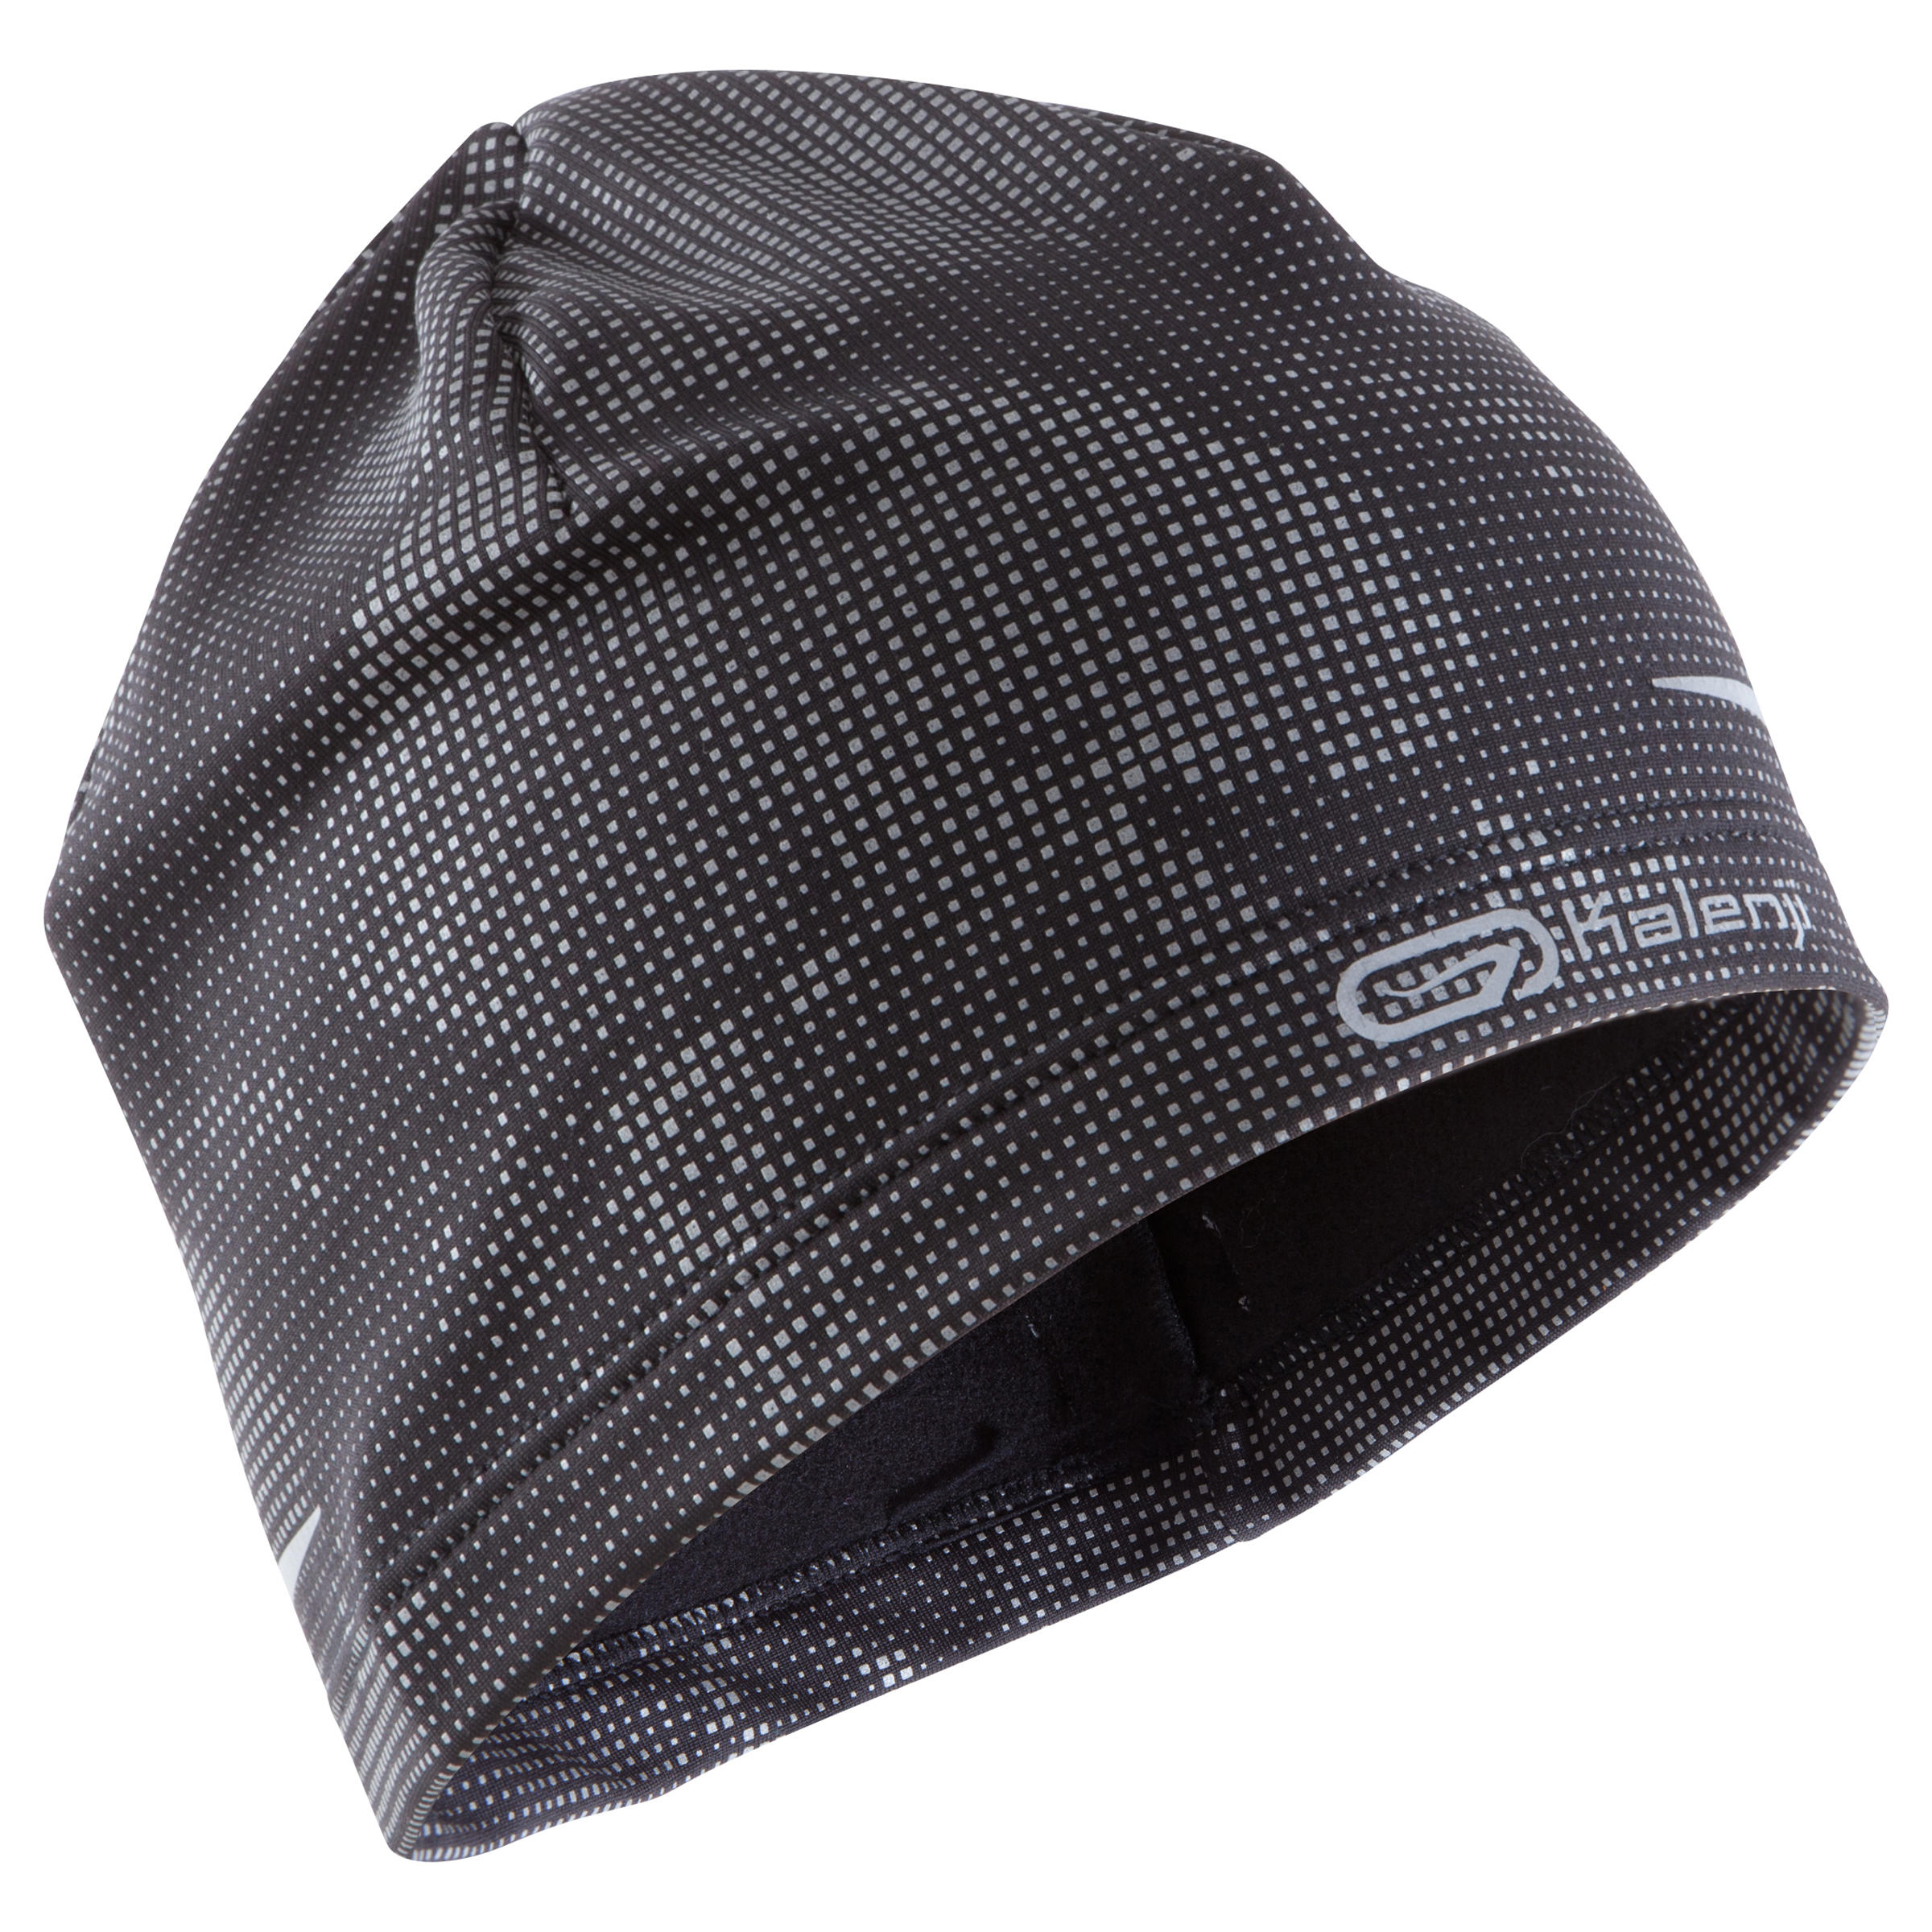 KIPRUN Running Hat - Black / Grey